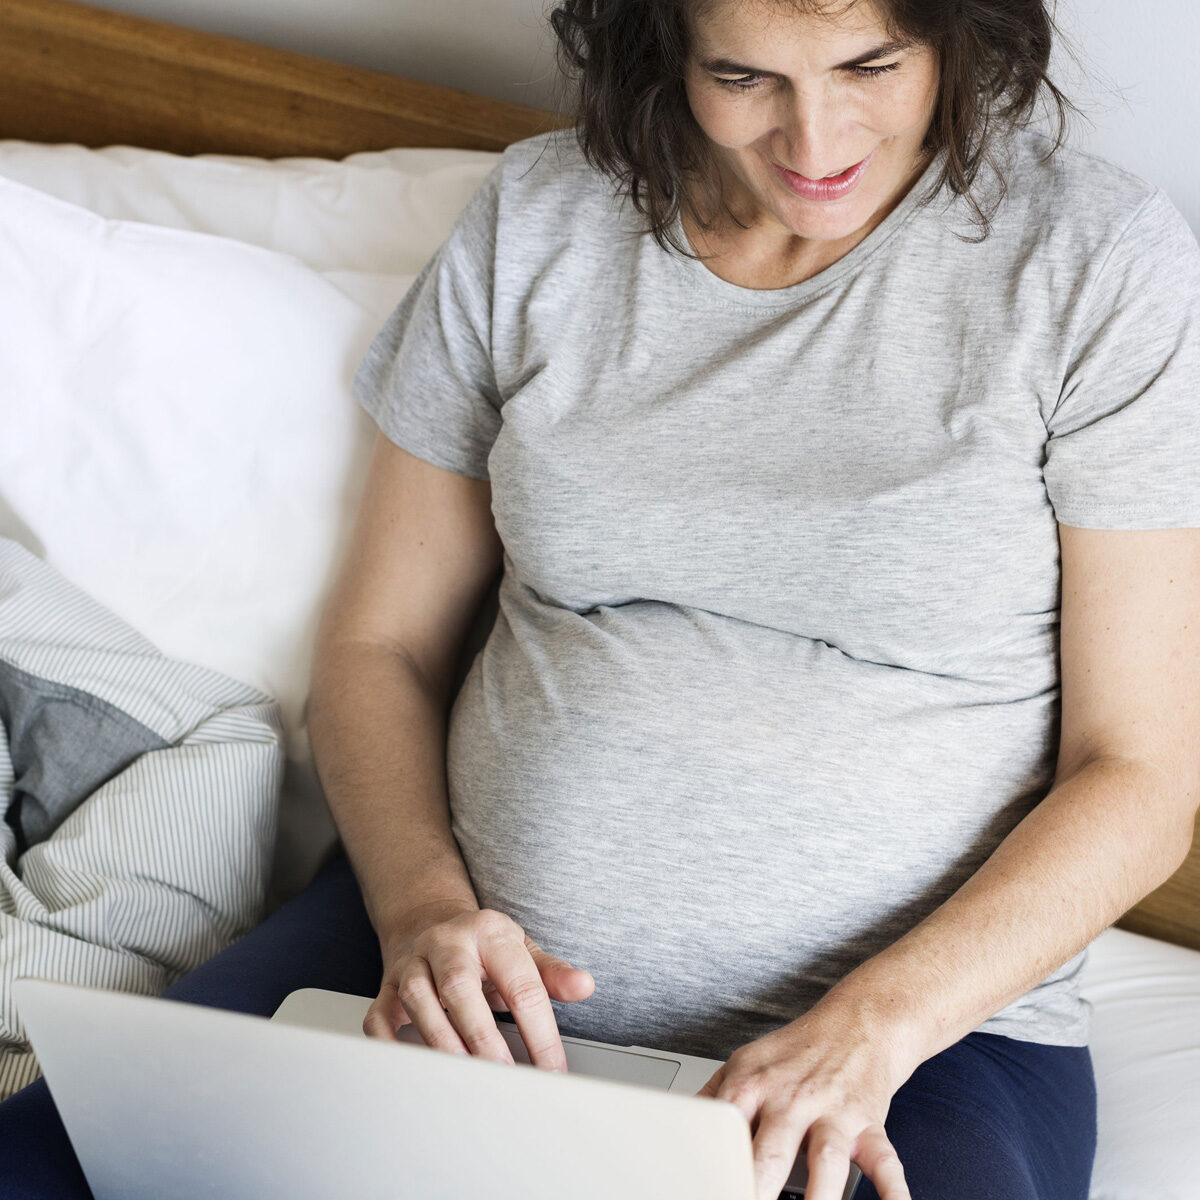 Una señora embarazada en sus treinta usa camisón gris, está sentada en una cama con almohadas blancas y un laptop en su regazo.